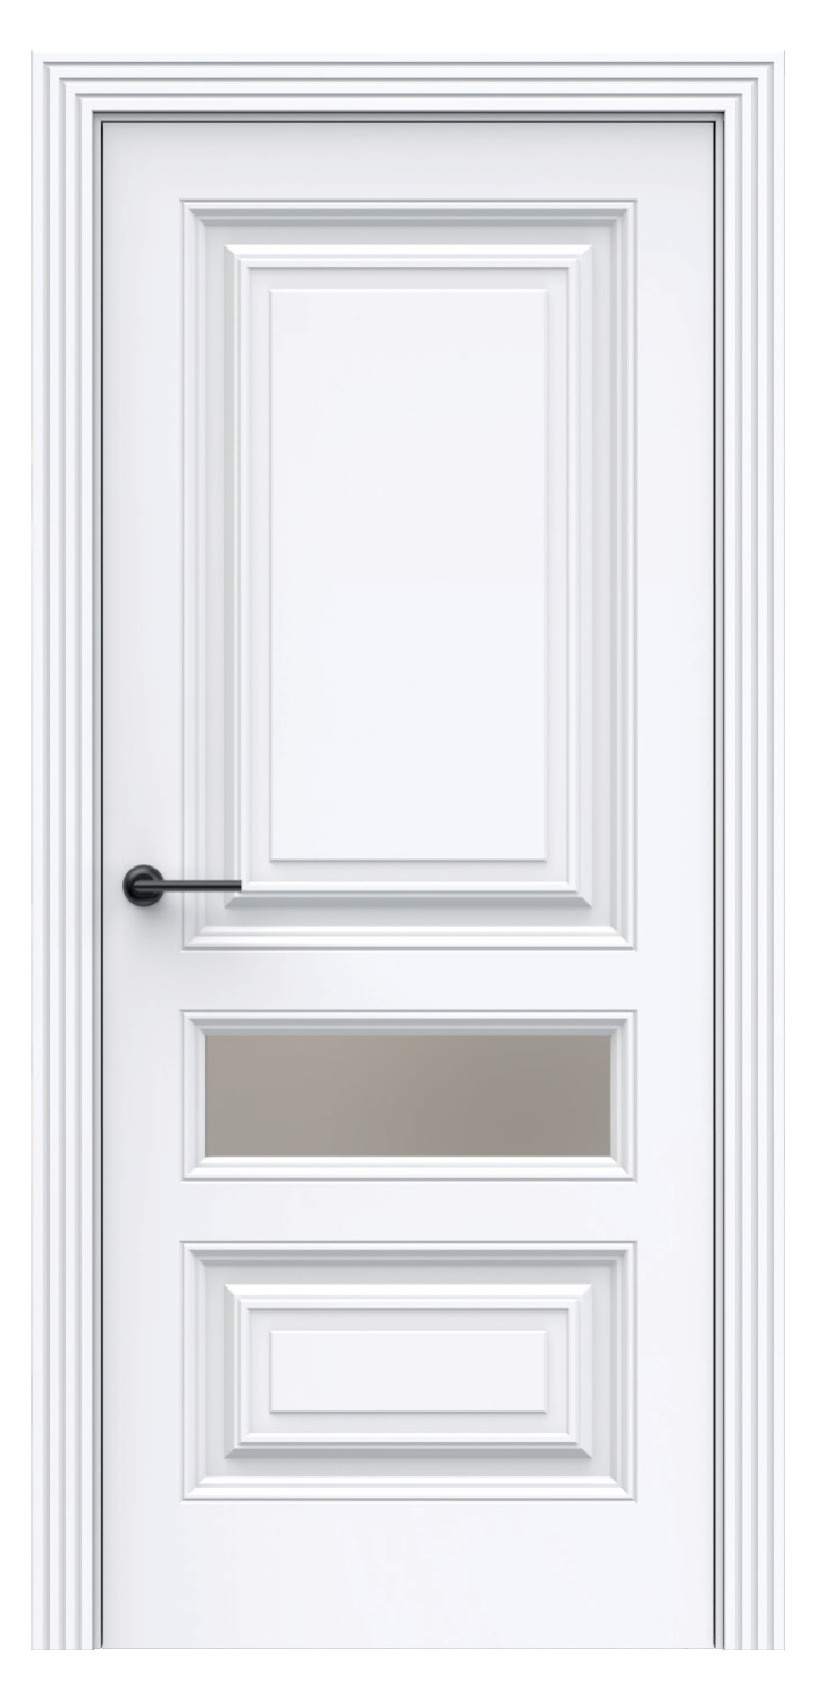 Questdoors Межкомнатная дверь QBR8, арт. 17921 - фото №1